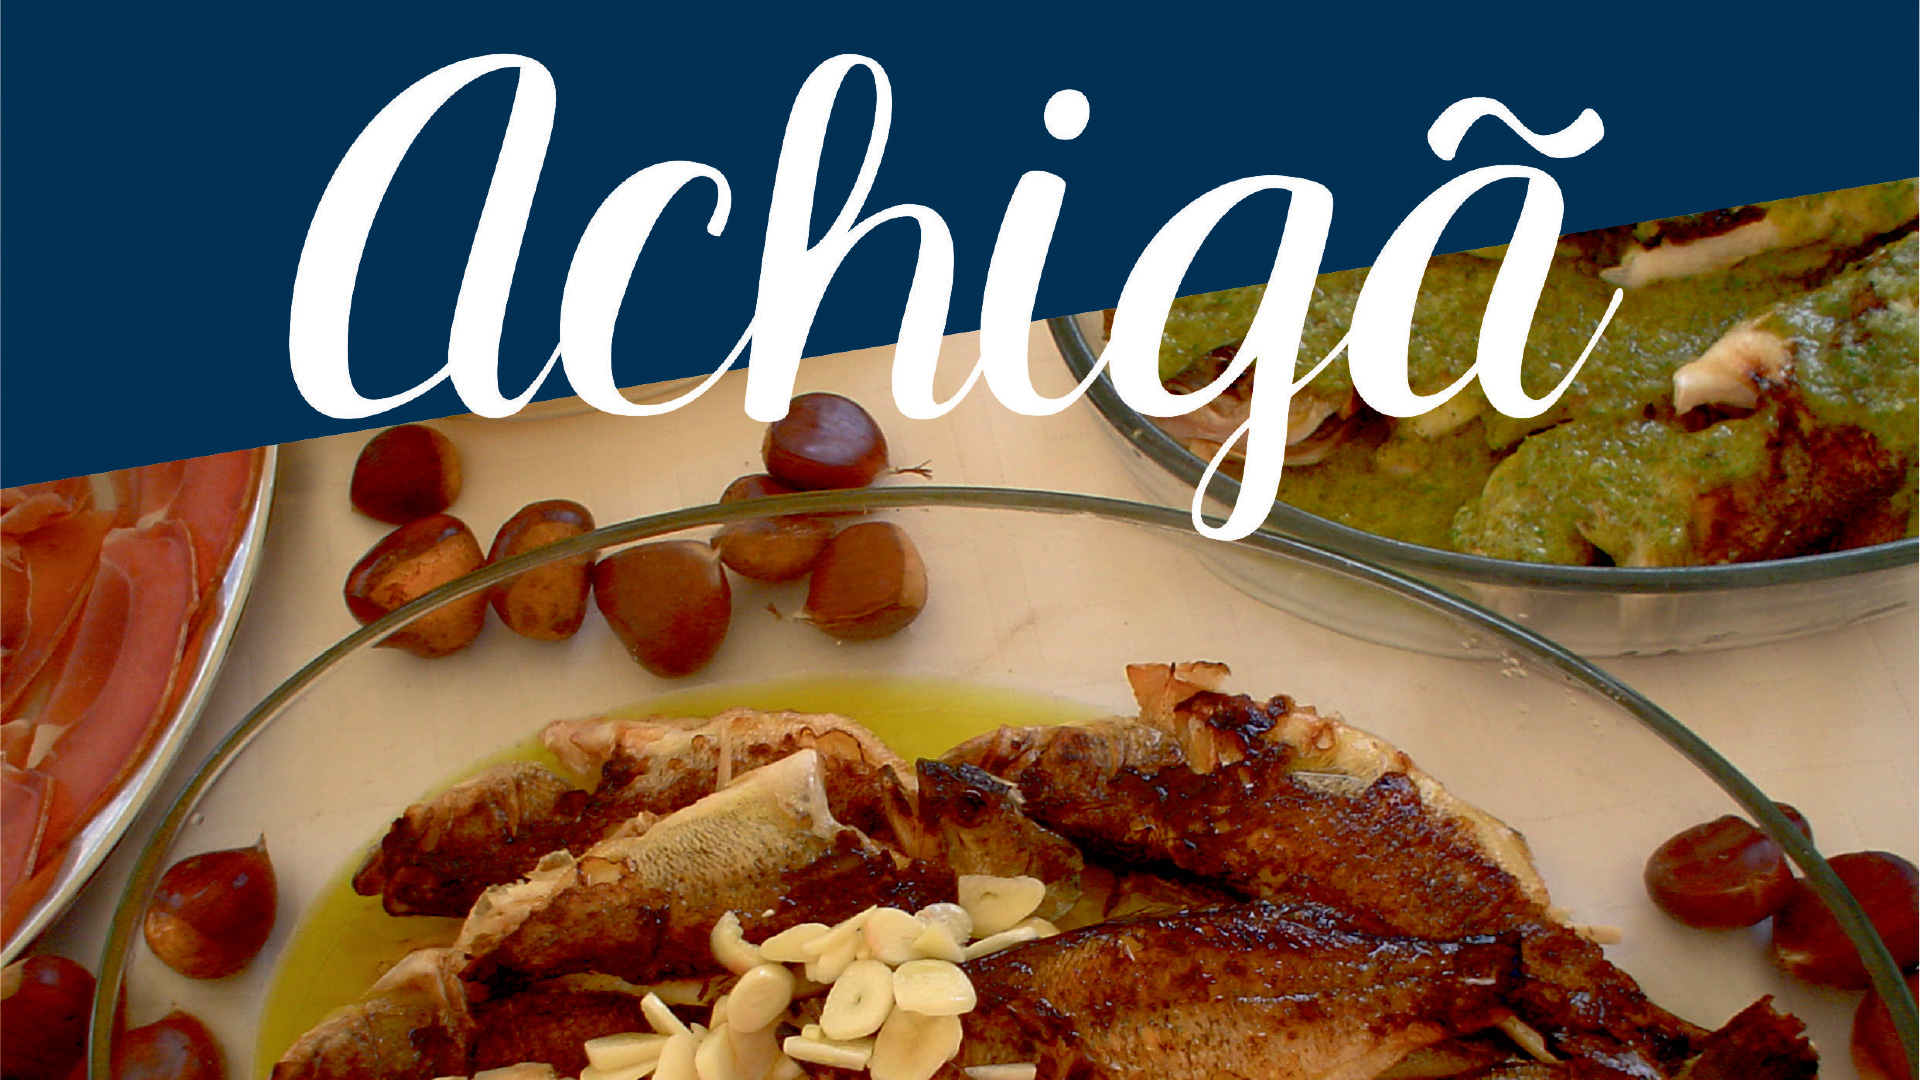 14.º Festival Gastronómico do Achigã tem início amanhã